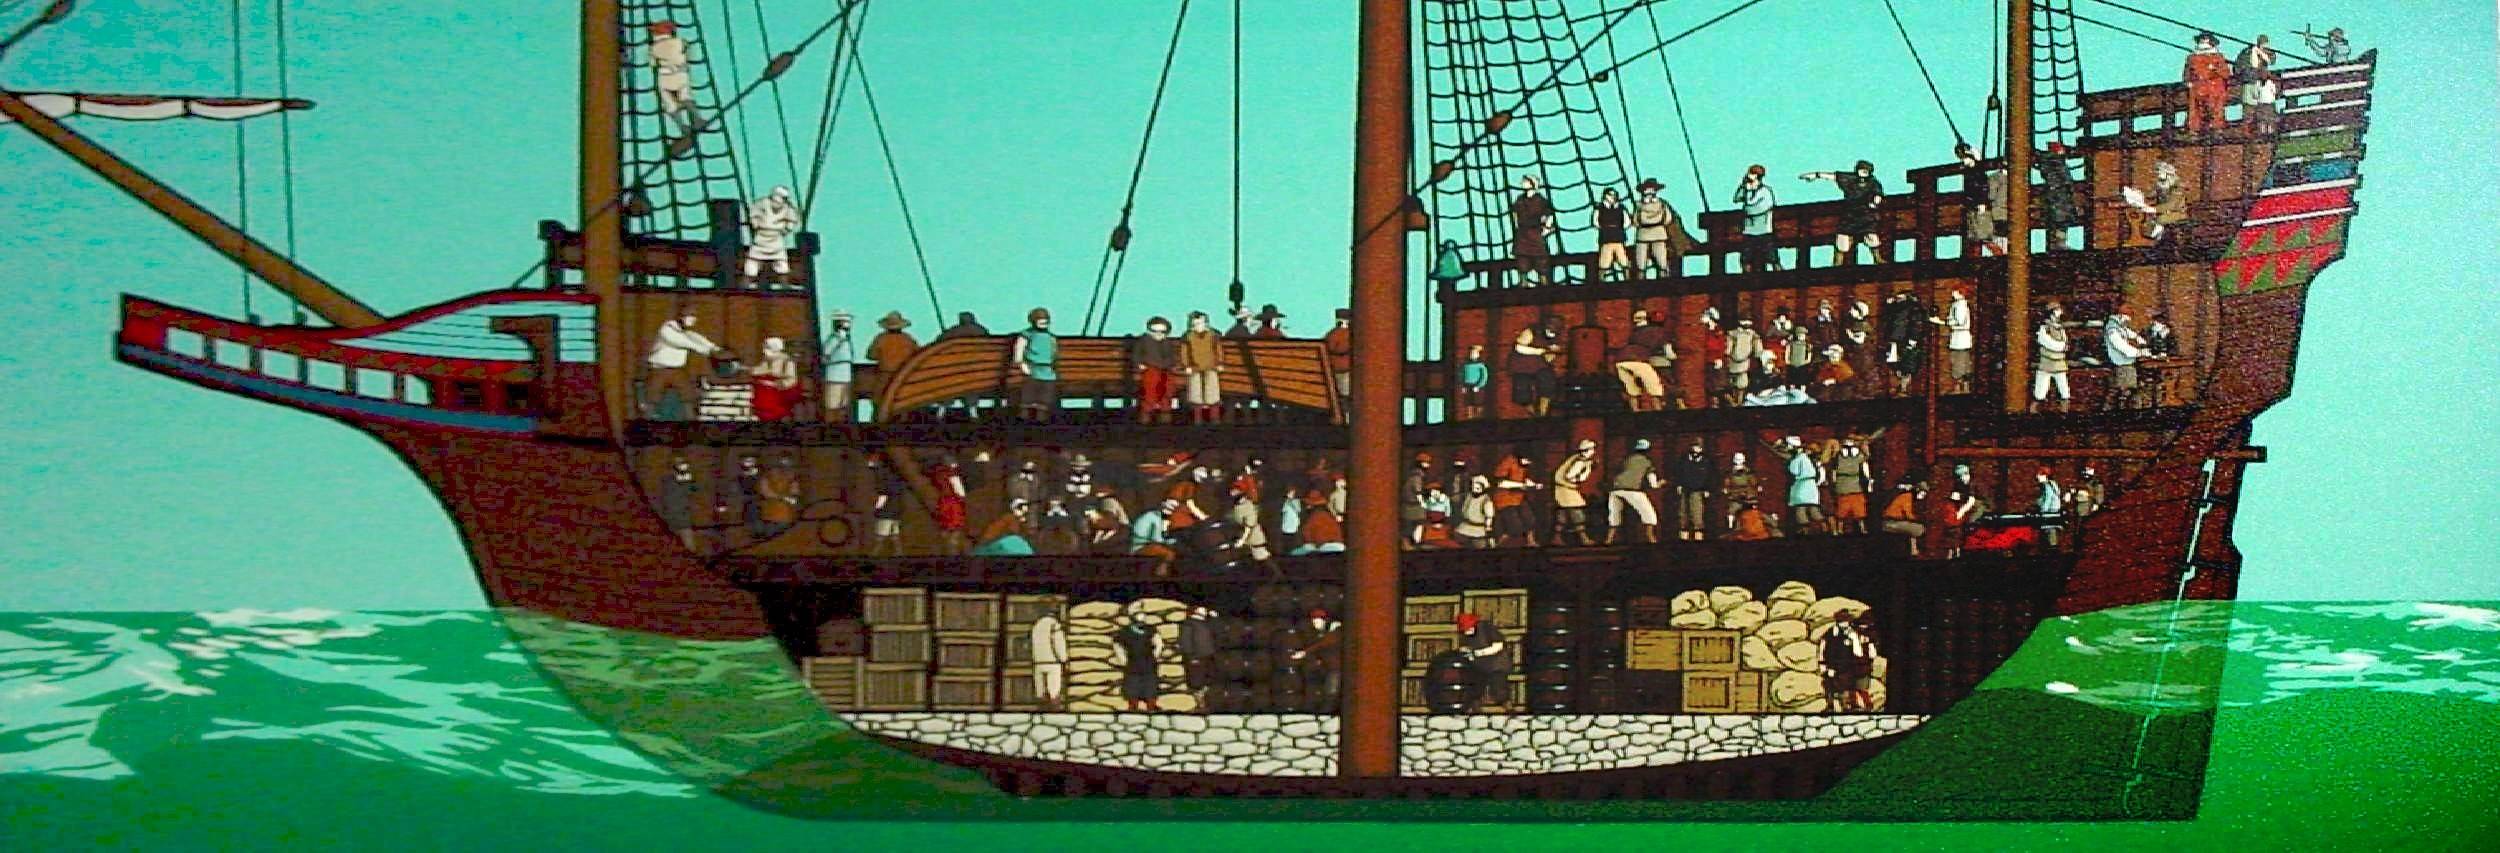 Есть корабль они живут в корабле. Галеон 17 века в разрезе. Галеон корабль в разрезе. Пиратский корабль Галеон.